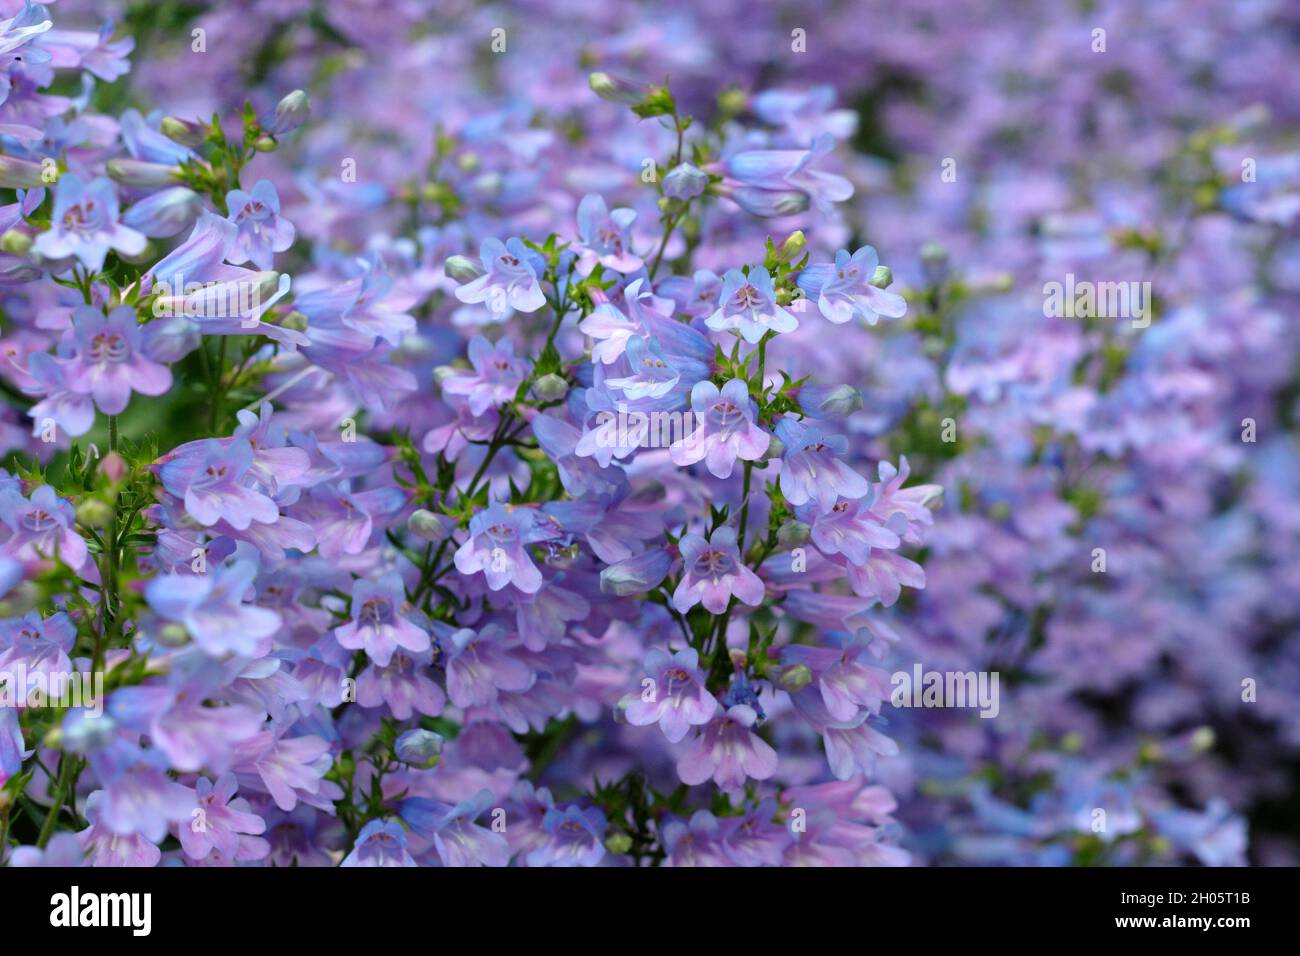 Penstemon.Penstemon heterophyllus 'Heavenly Blue', une langue à croissance faible avec des fleurs denses de bleu pourpre.ROYAUME-UNI Banque D'Images